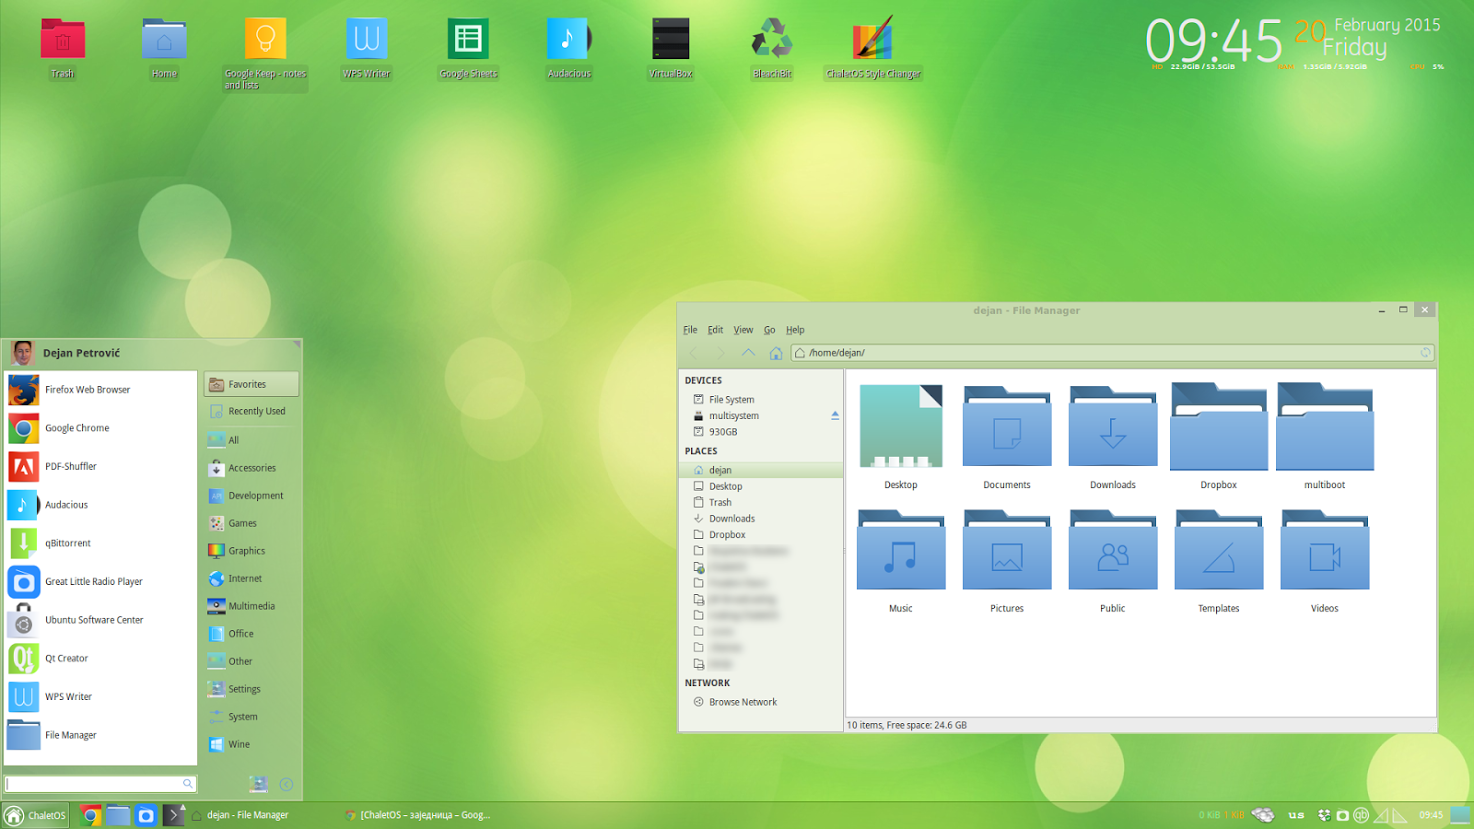 Chalet os green desktop